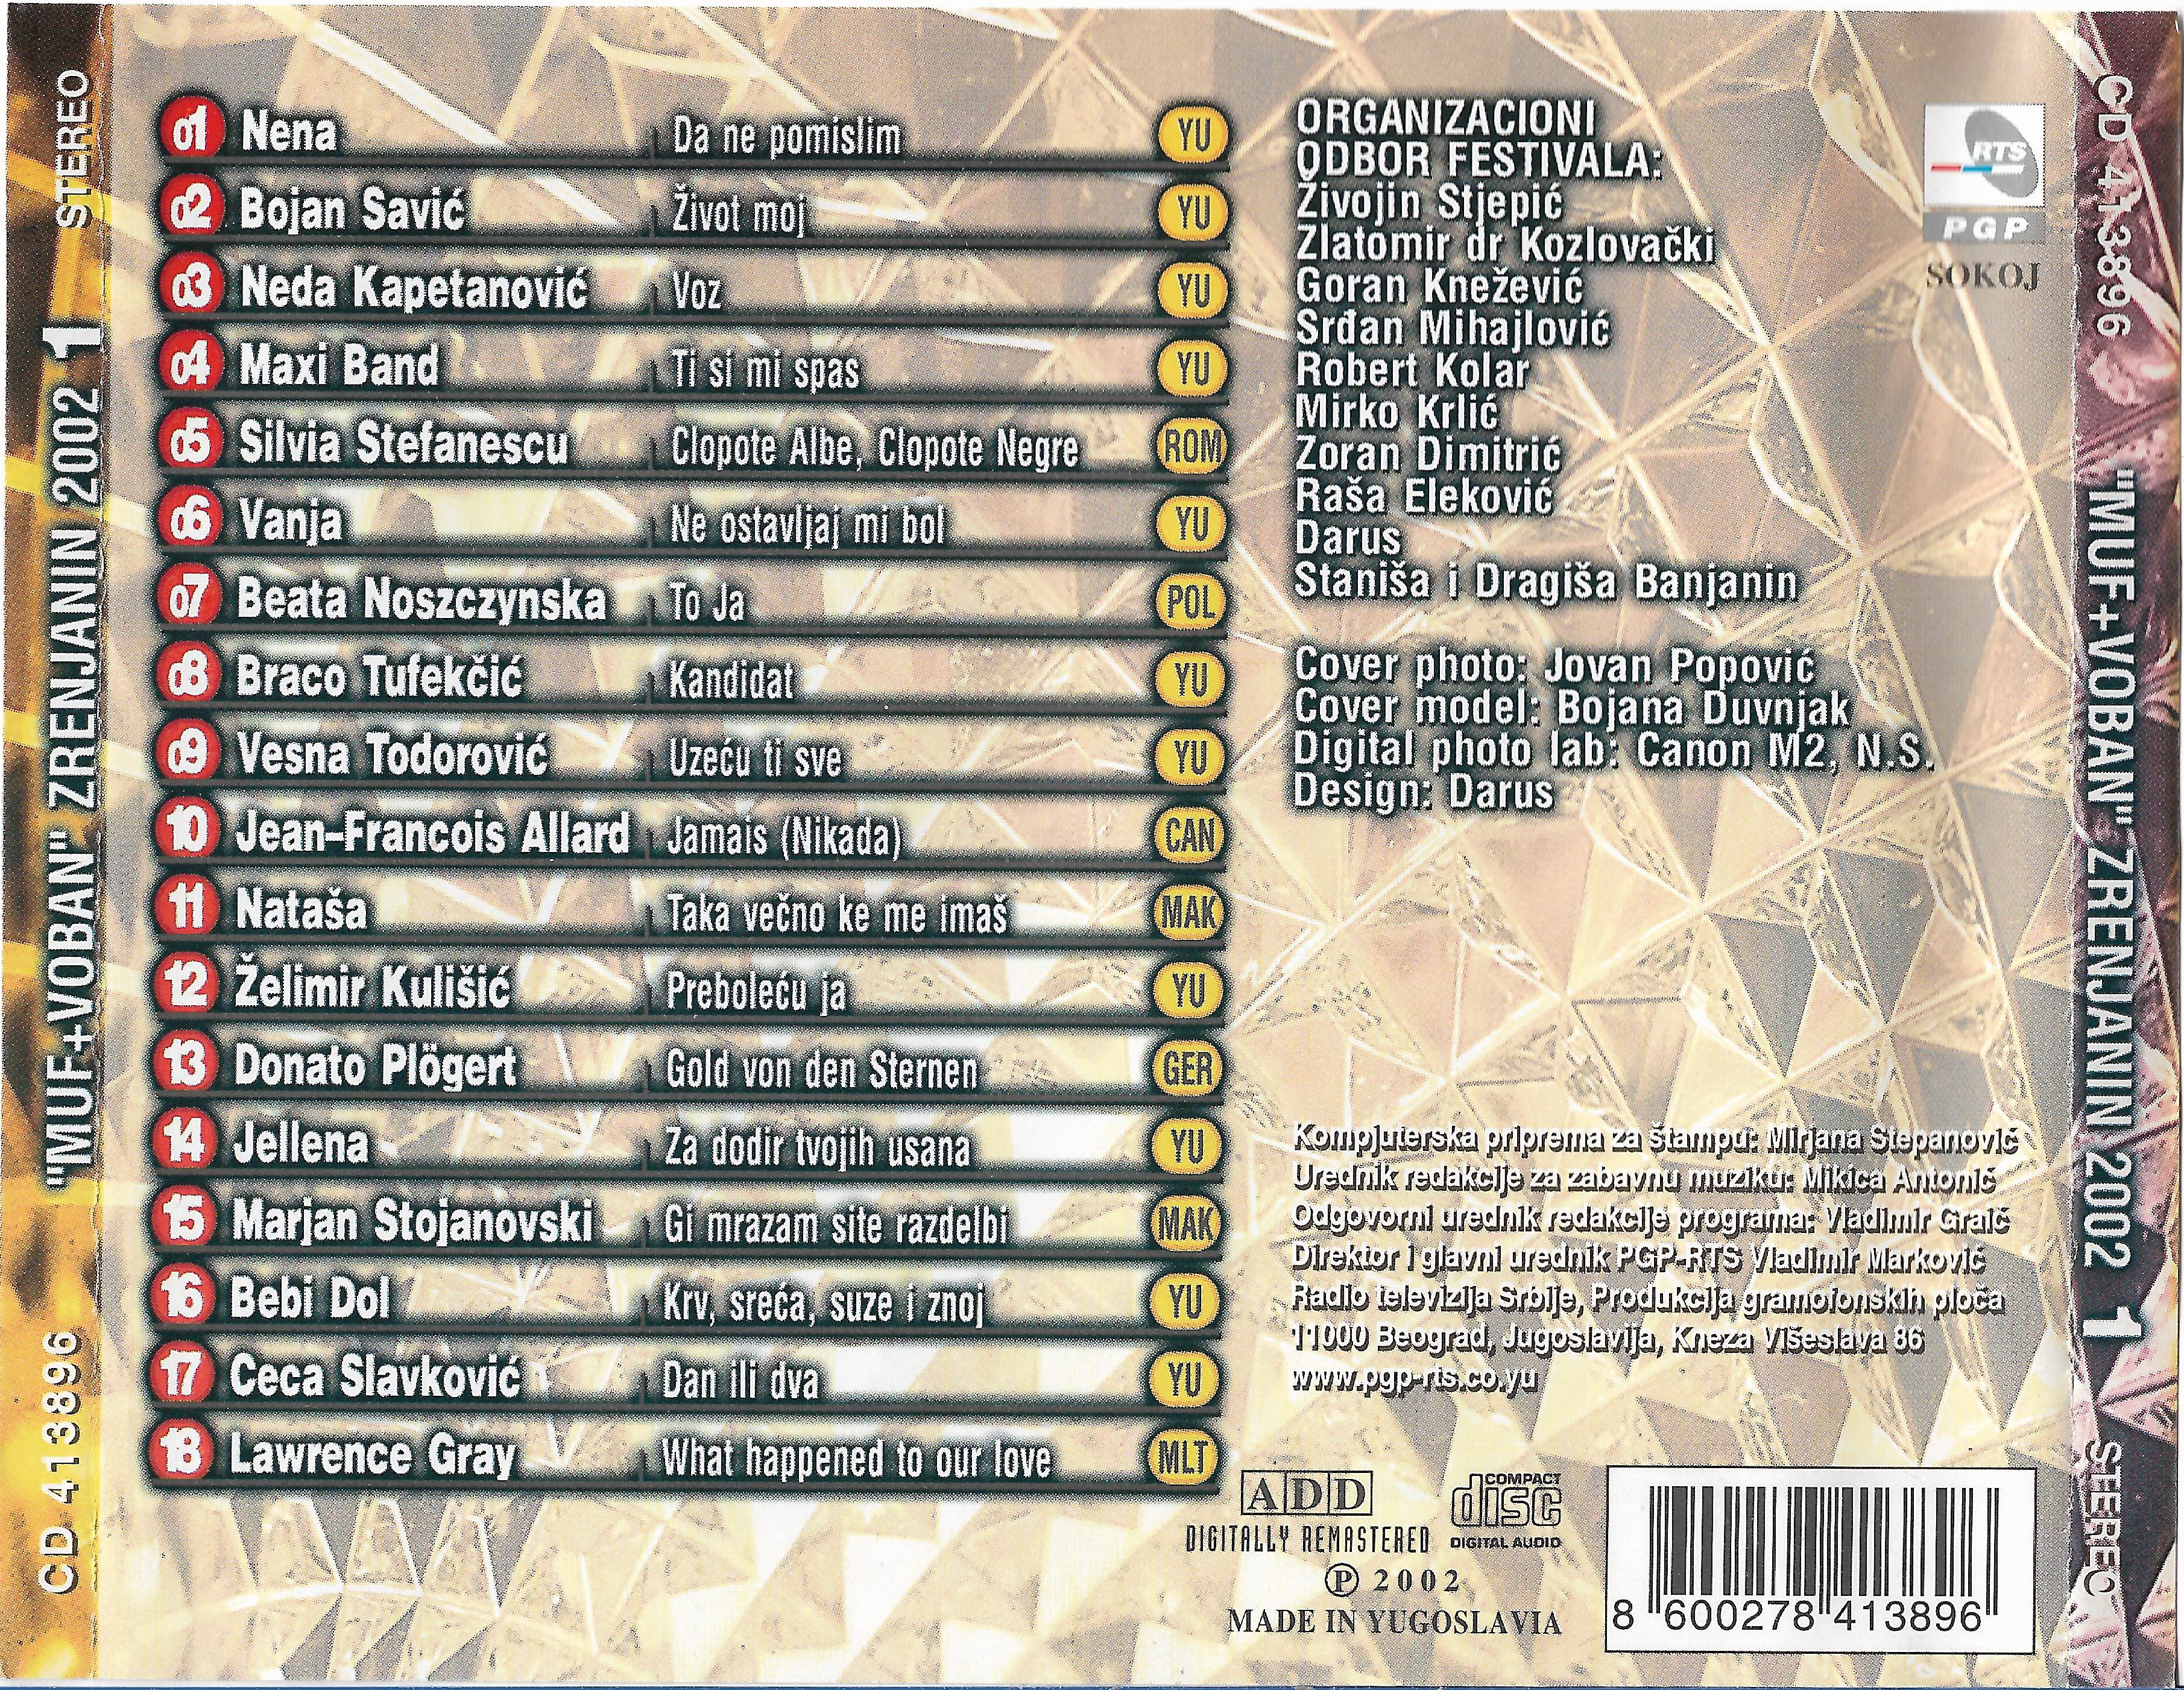 MUFVOBAN 2002 CD 1 3